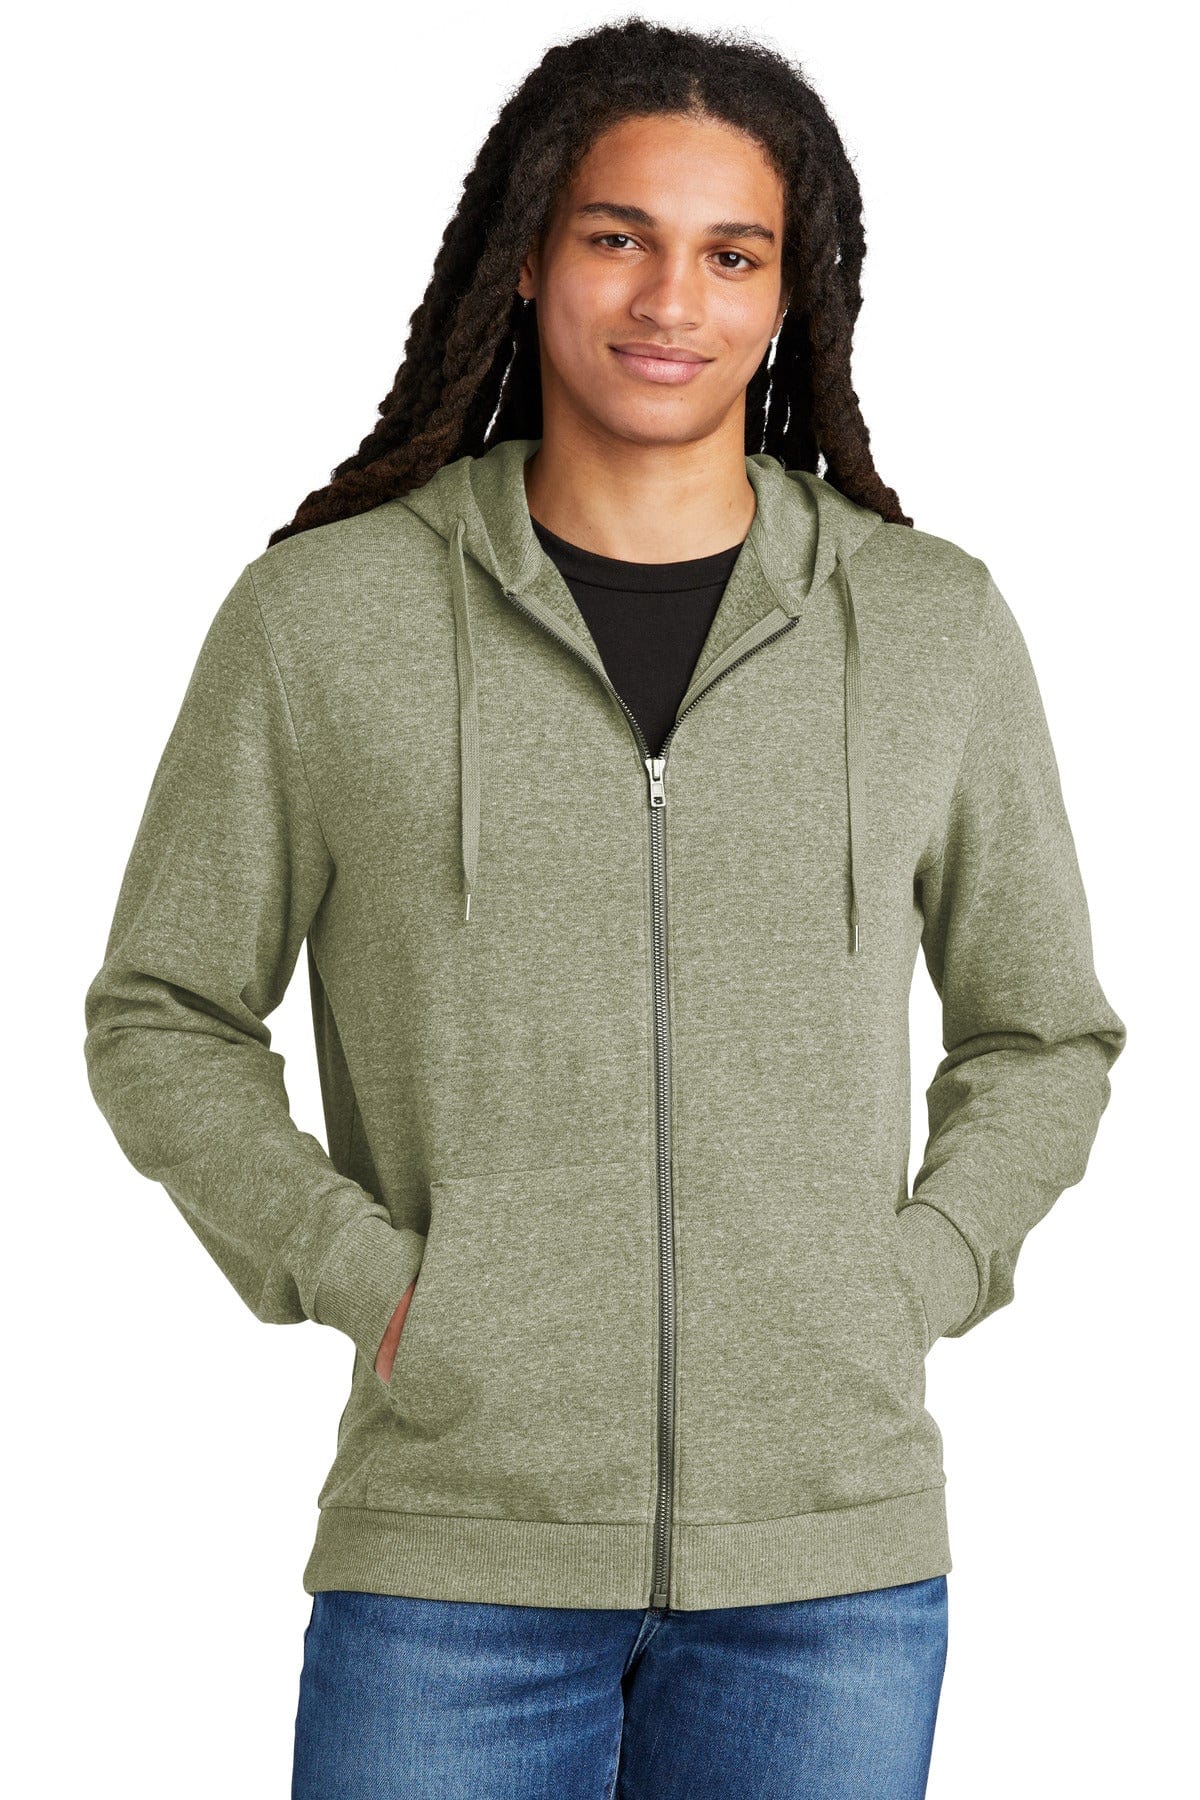 District Sweatshirts/Fleece District DT1302: Perfect Tri Fleece Full-Zip Hoodie